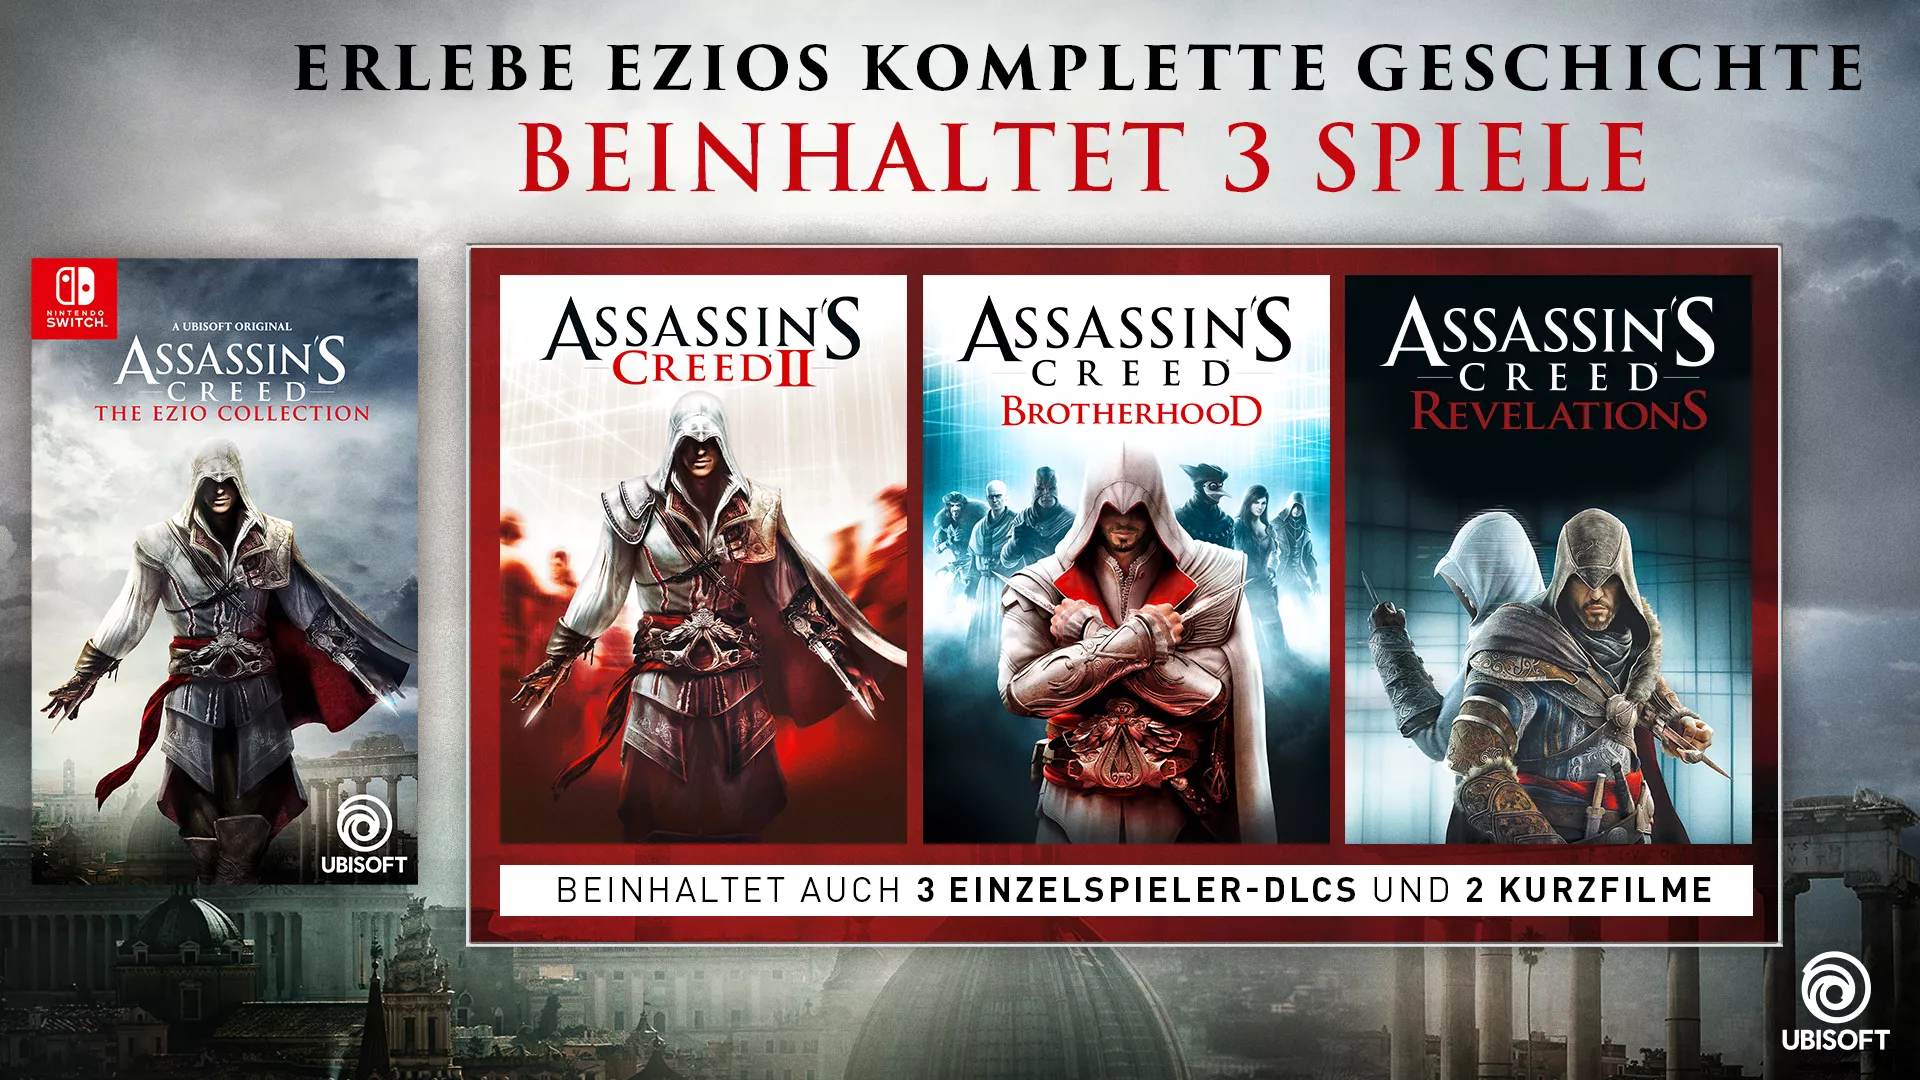 Assassin's Creed: The Ezio Collection für Nintendo Switch bestätigt Heropic